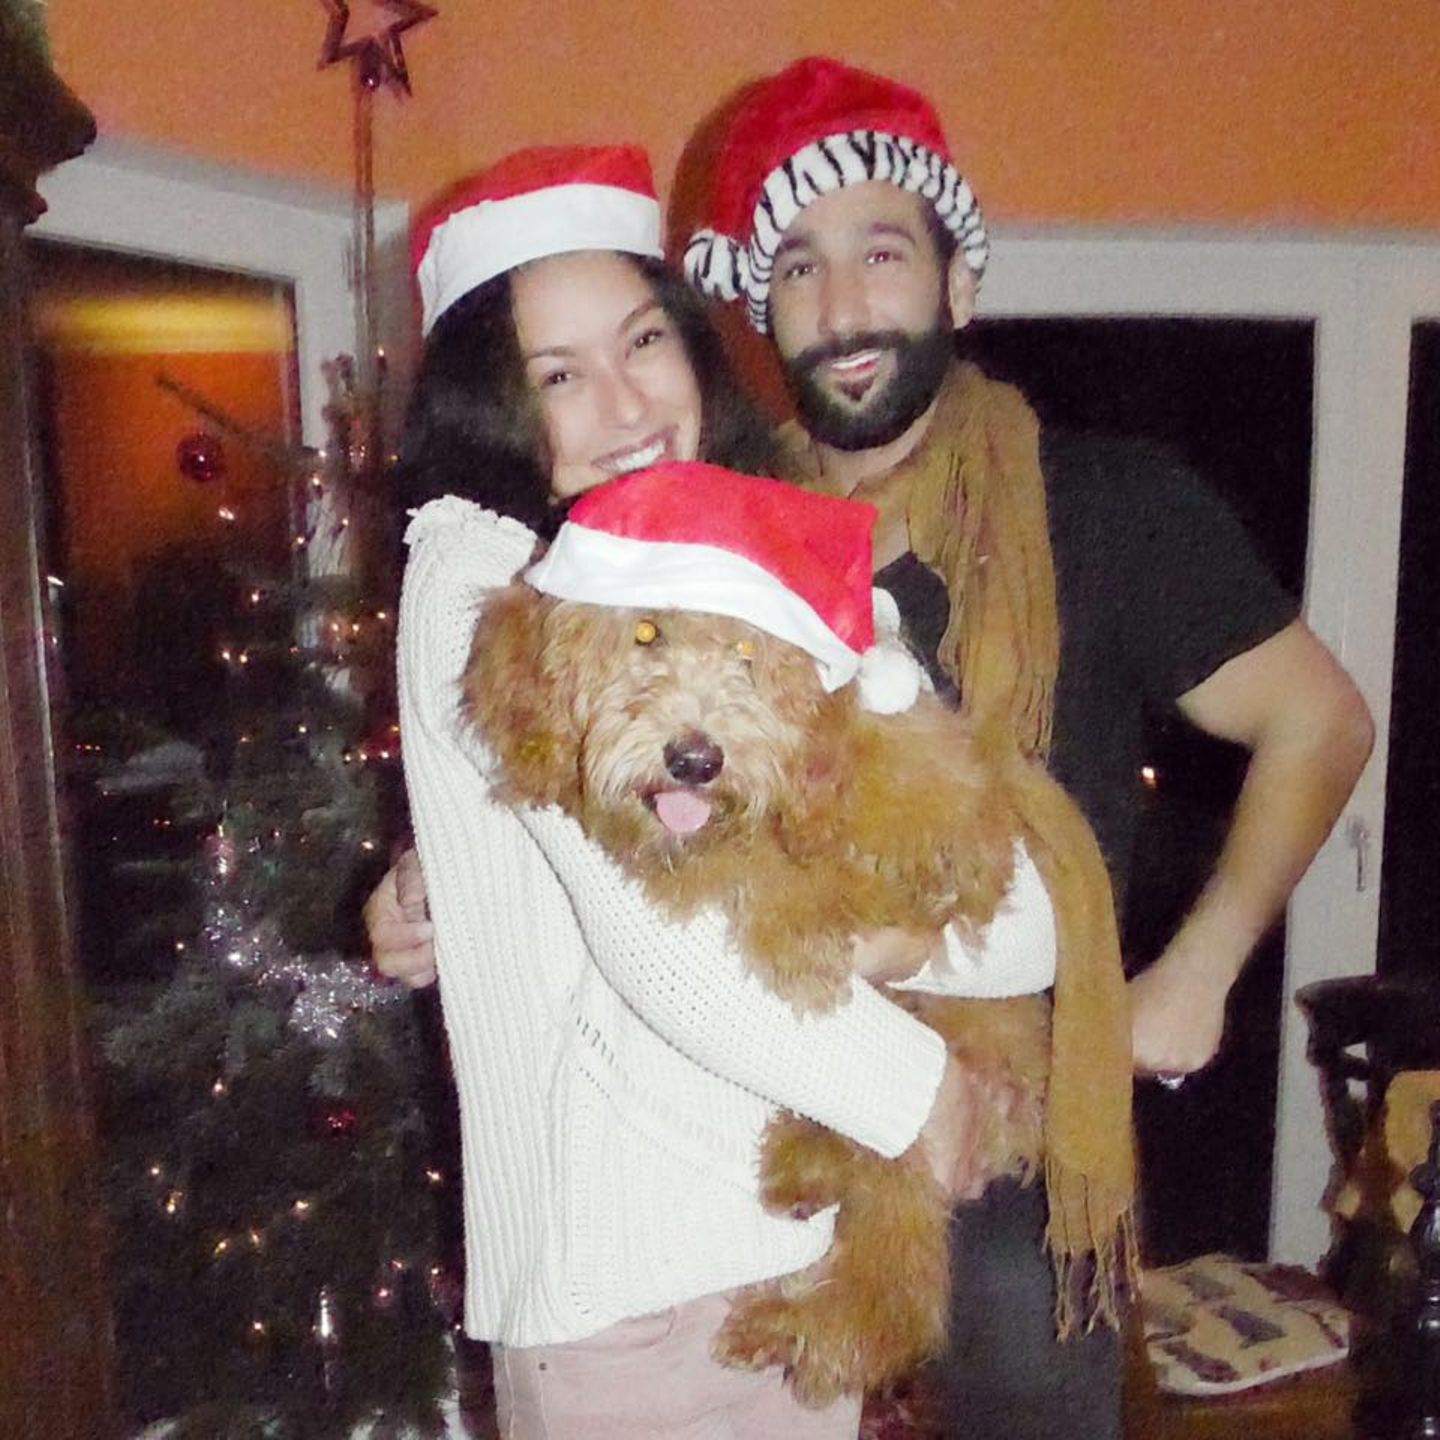 24. Dezember 2016  Mit diesem süßen Foto grüßen Rebecca Mir und Massimo Sinató ihre Fans zu Weihnachten.